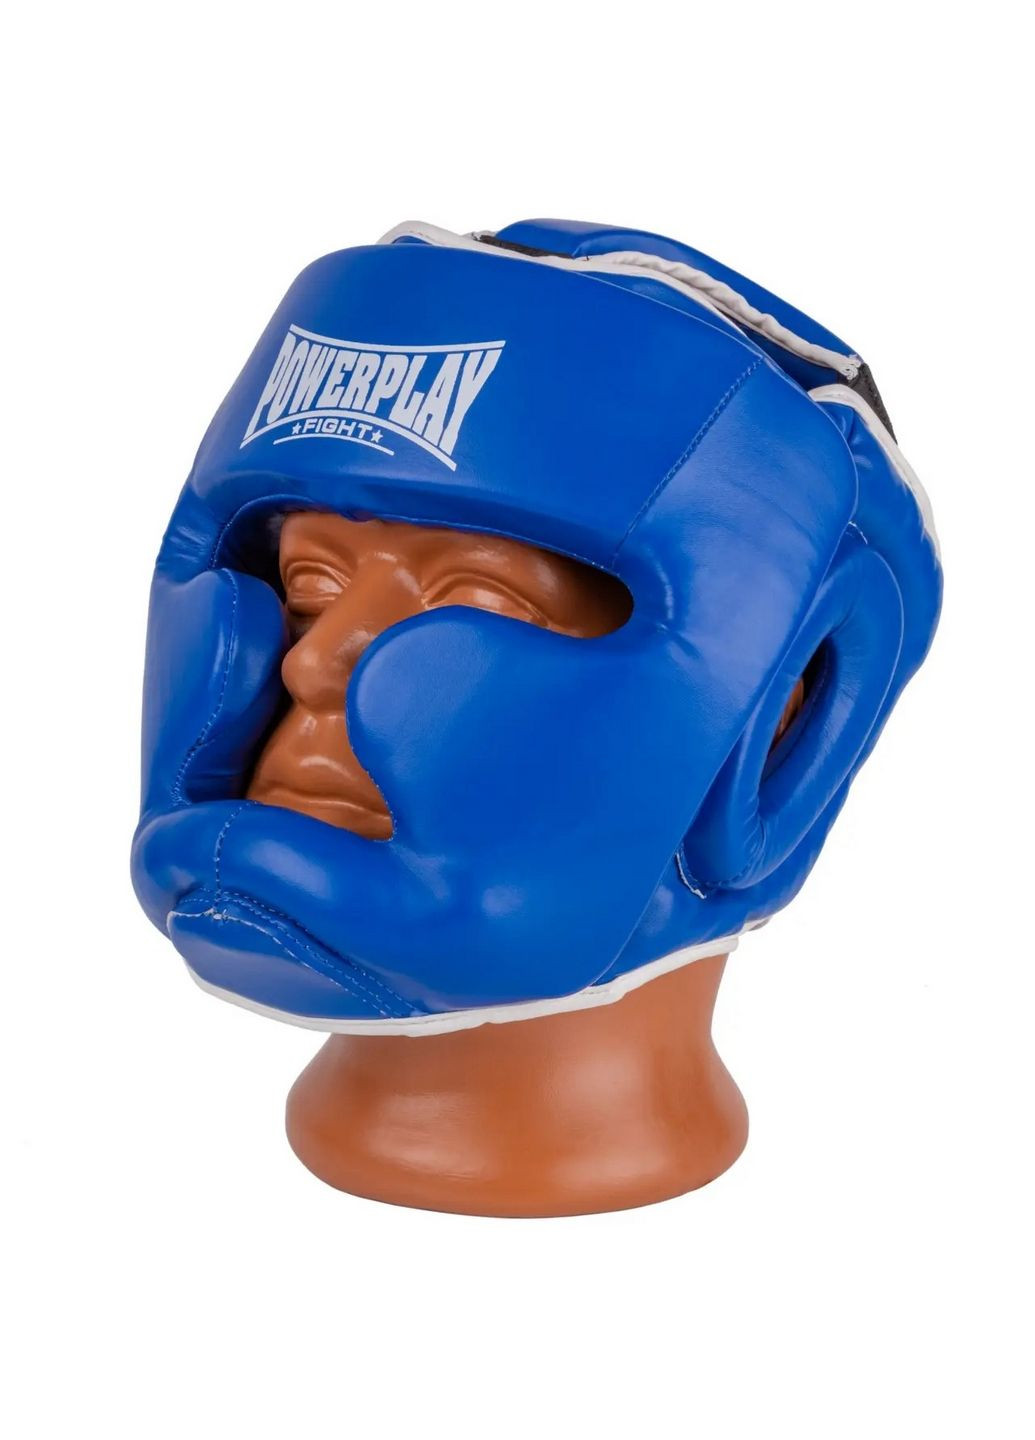 Боксерский шлем 3100 PU (тренировочный) PowerPlay (293483469)